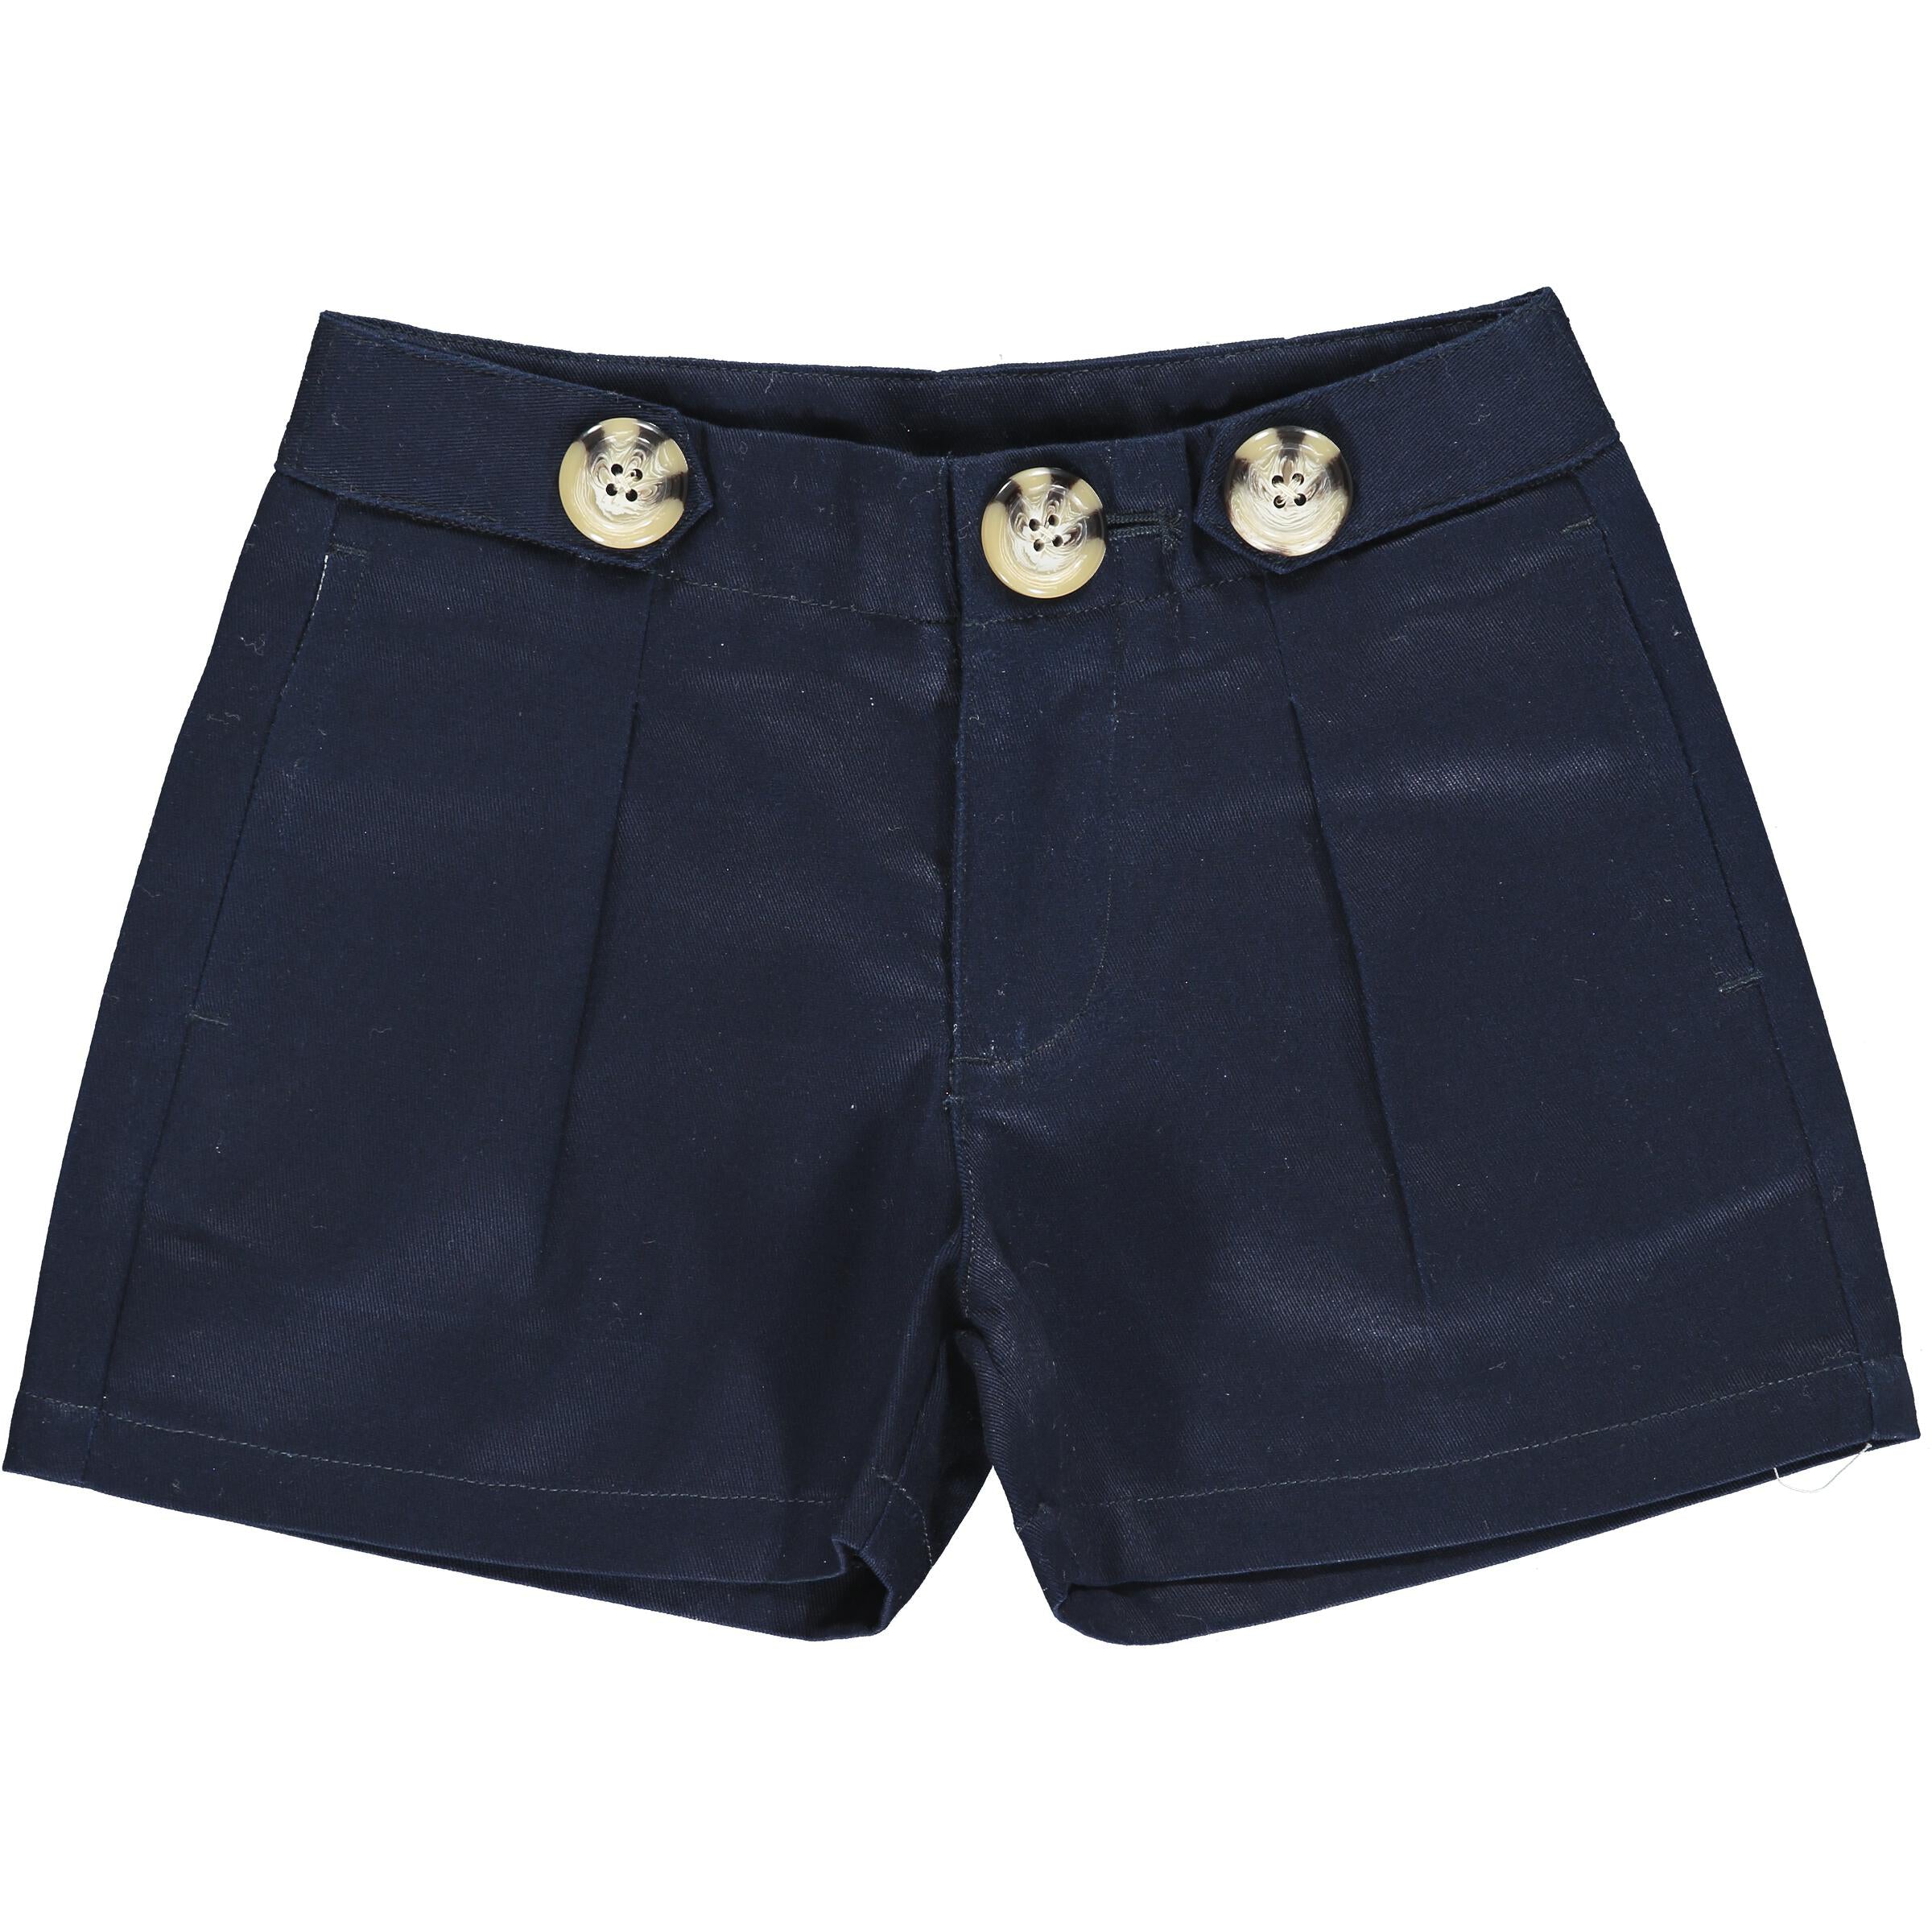 Navy Blue Hattie Shorts